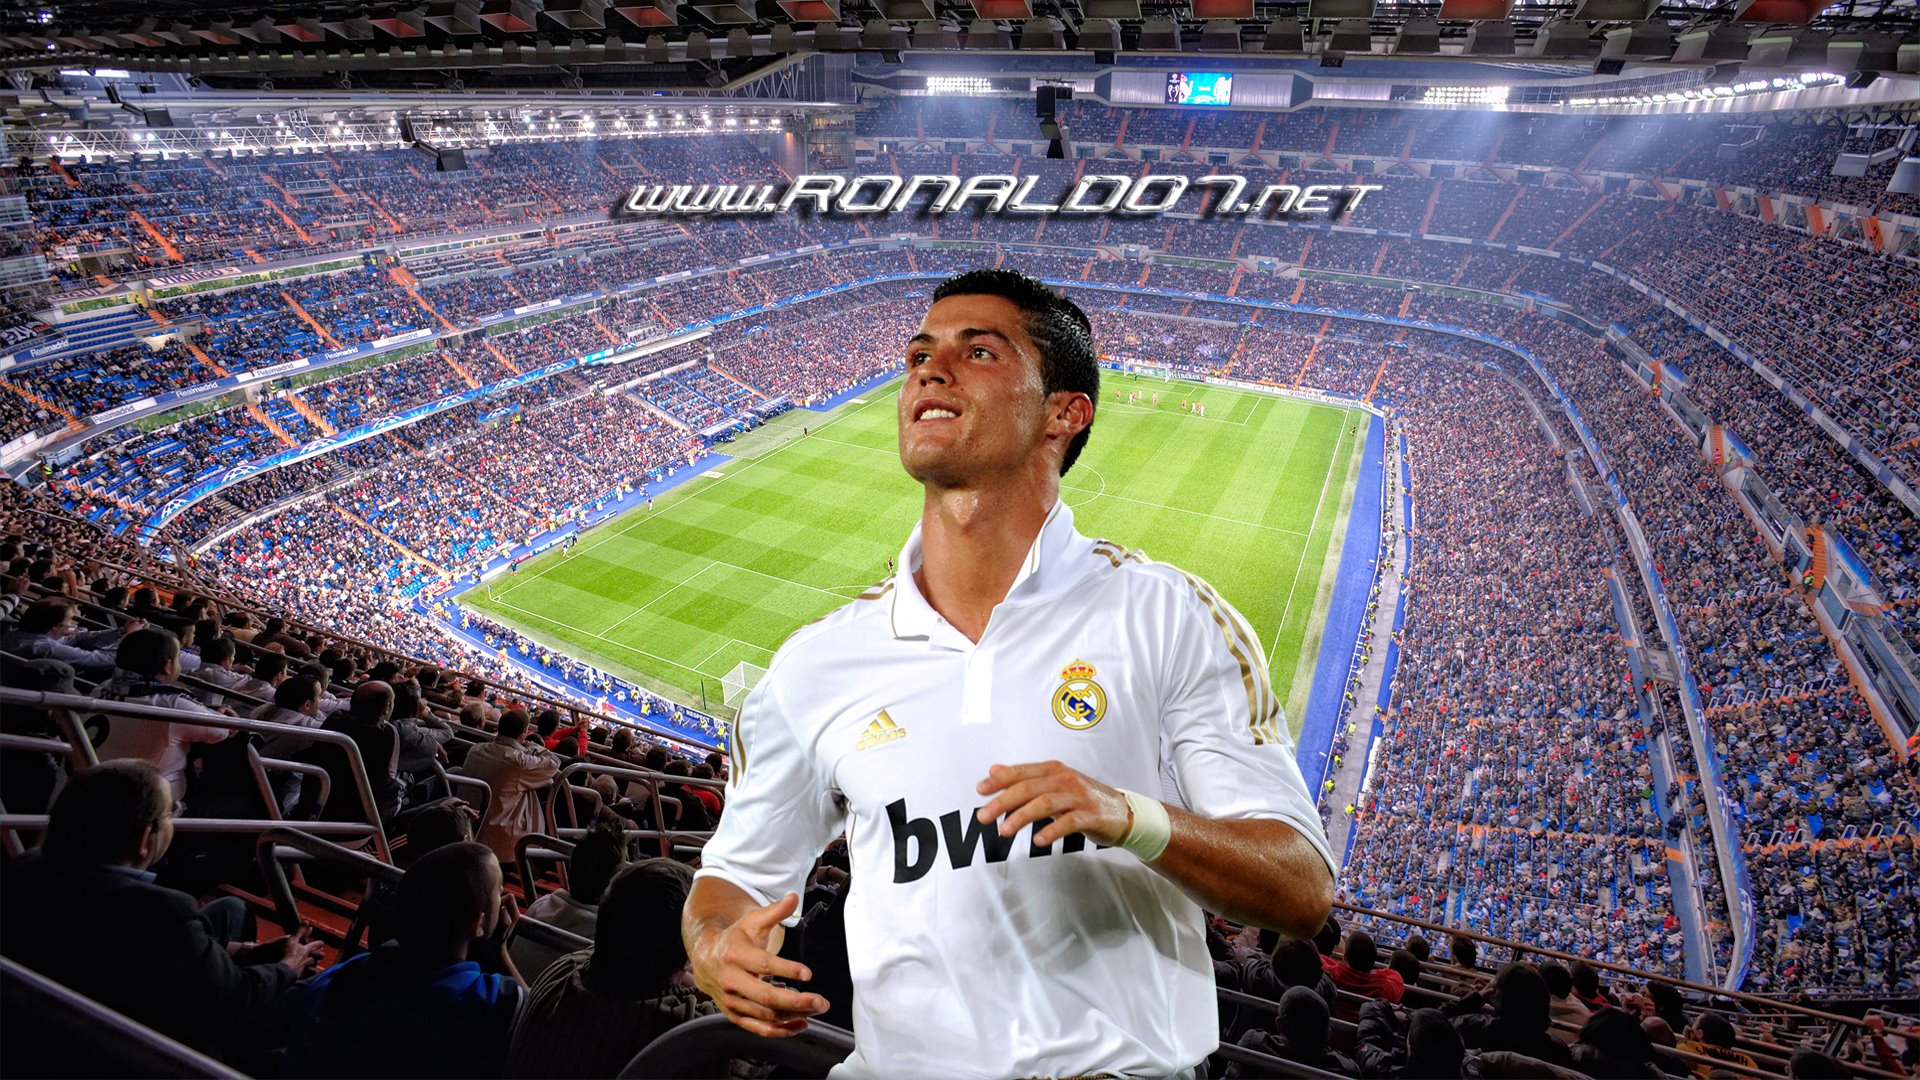 Cristiano Ronaldo Wallpaper In Full Hd - Santiago Bernabeu Stadium Capacity - HD Wallpaper 